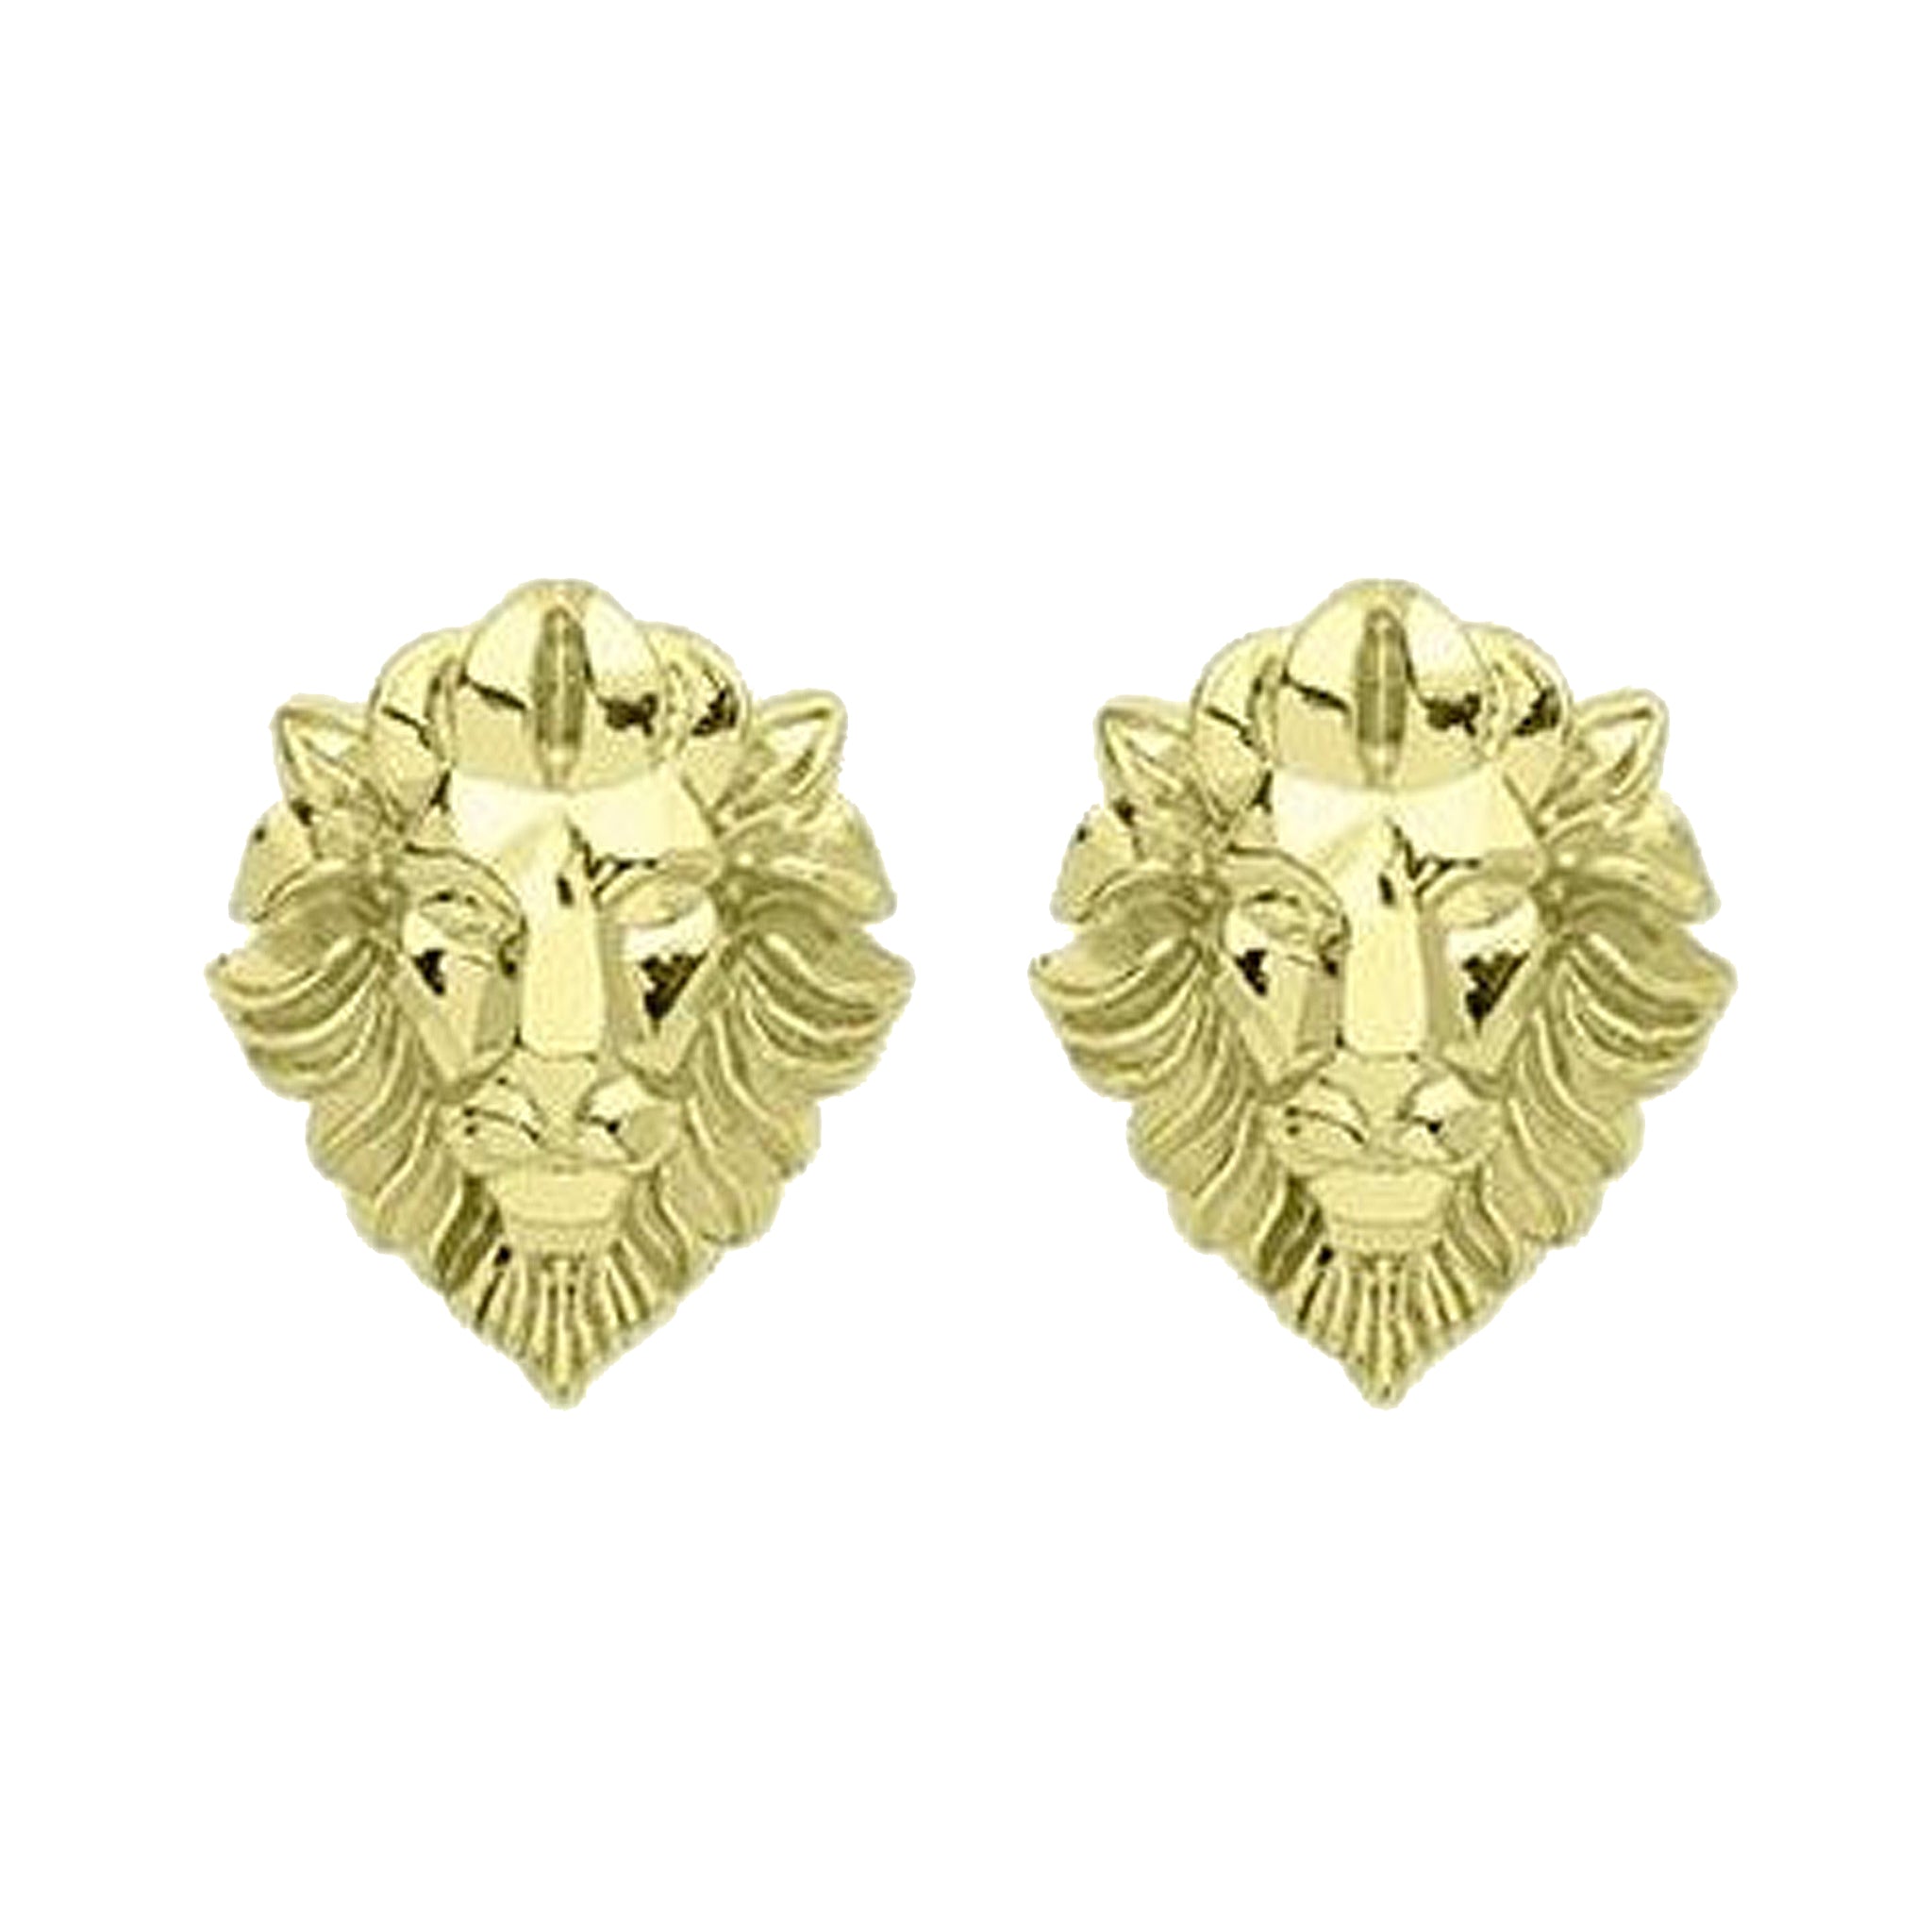 Sheila Fajl Hear Me Roar Lion Stud Earrings in 18k Polished Gold Plated